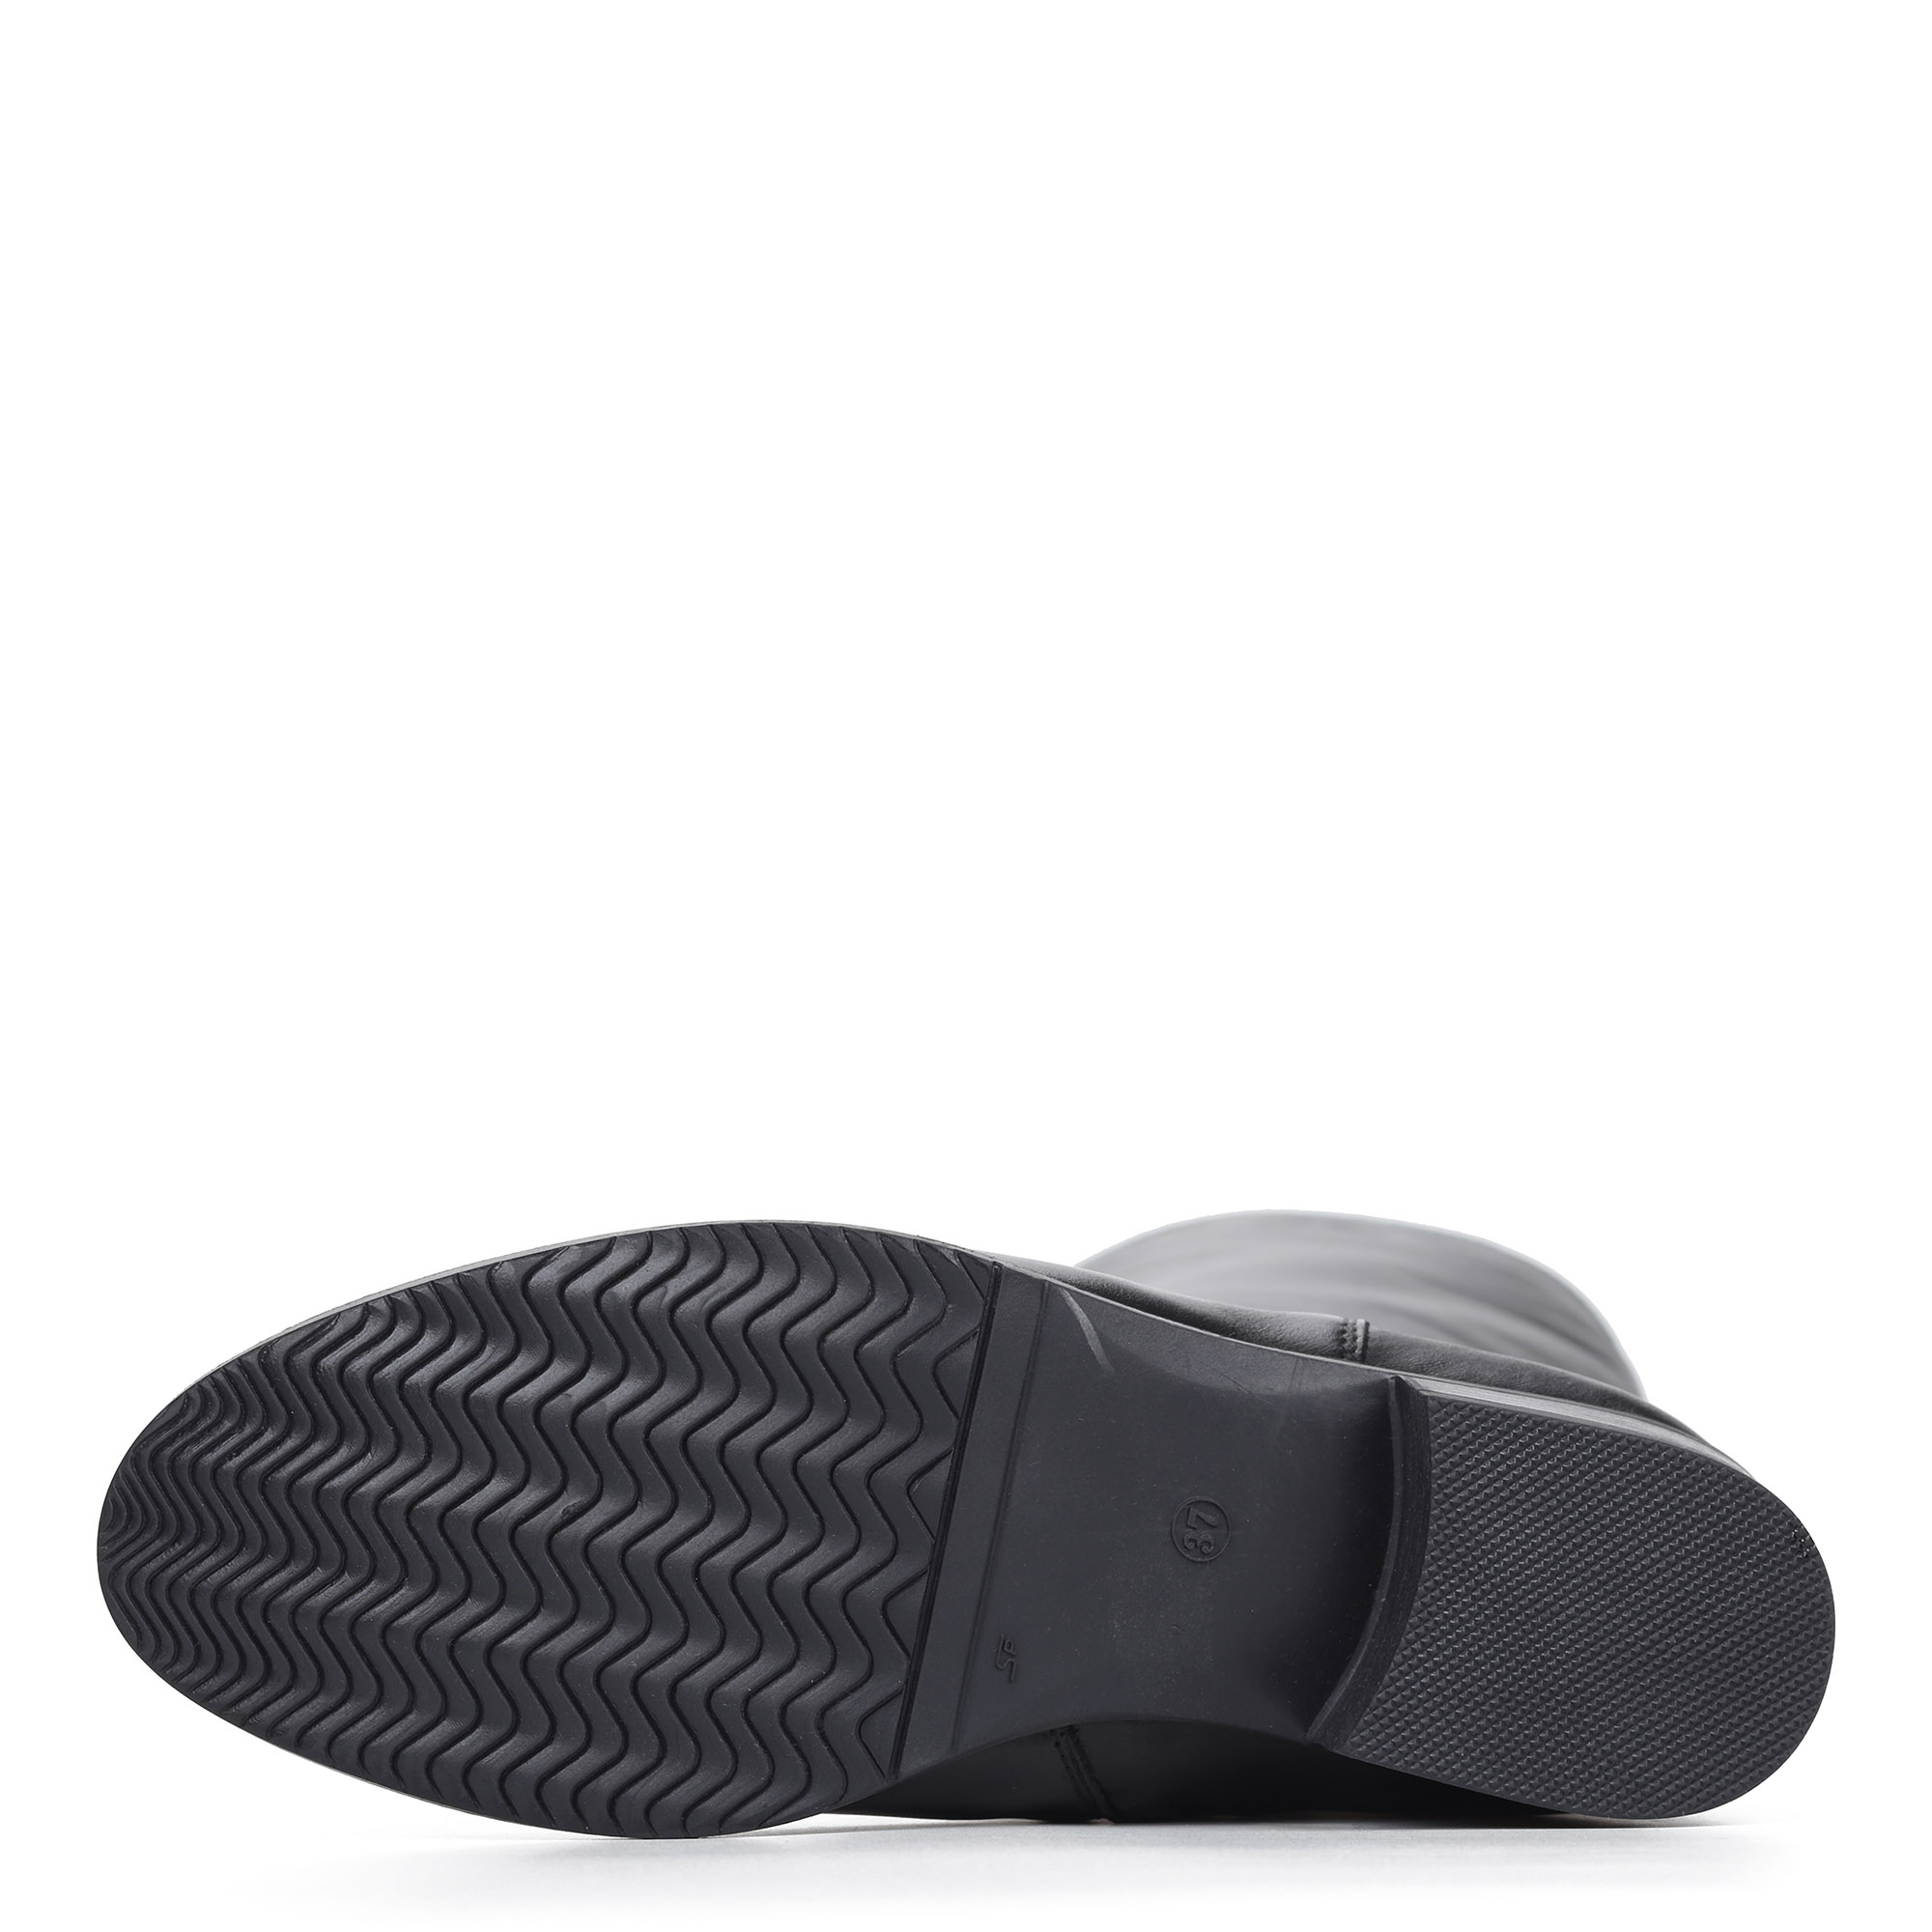 Сапоги на низком каблуке из кожи Respect, размер 38, цвет черный - фото 7